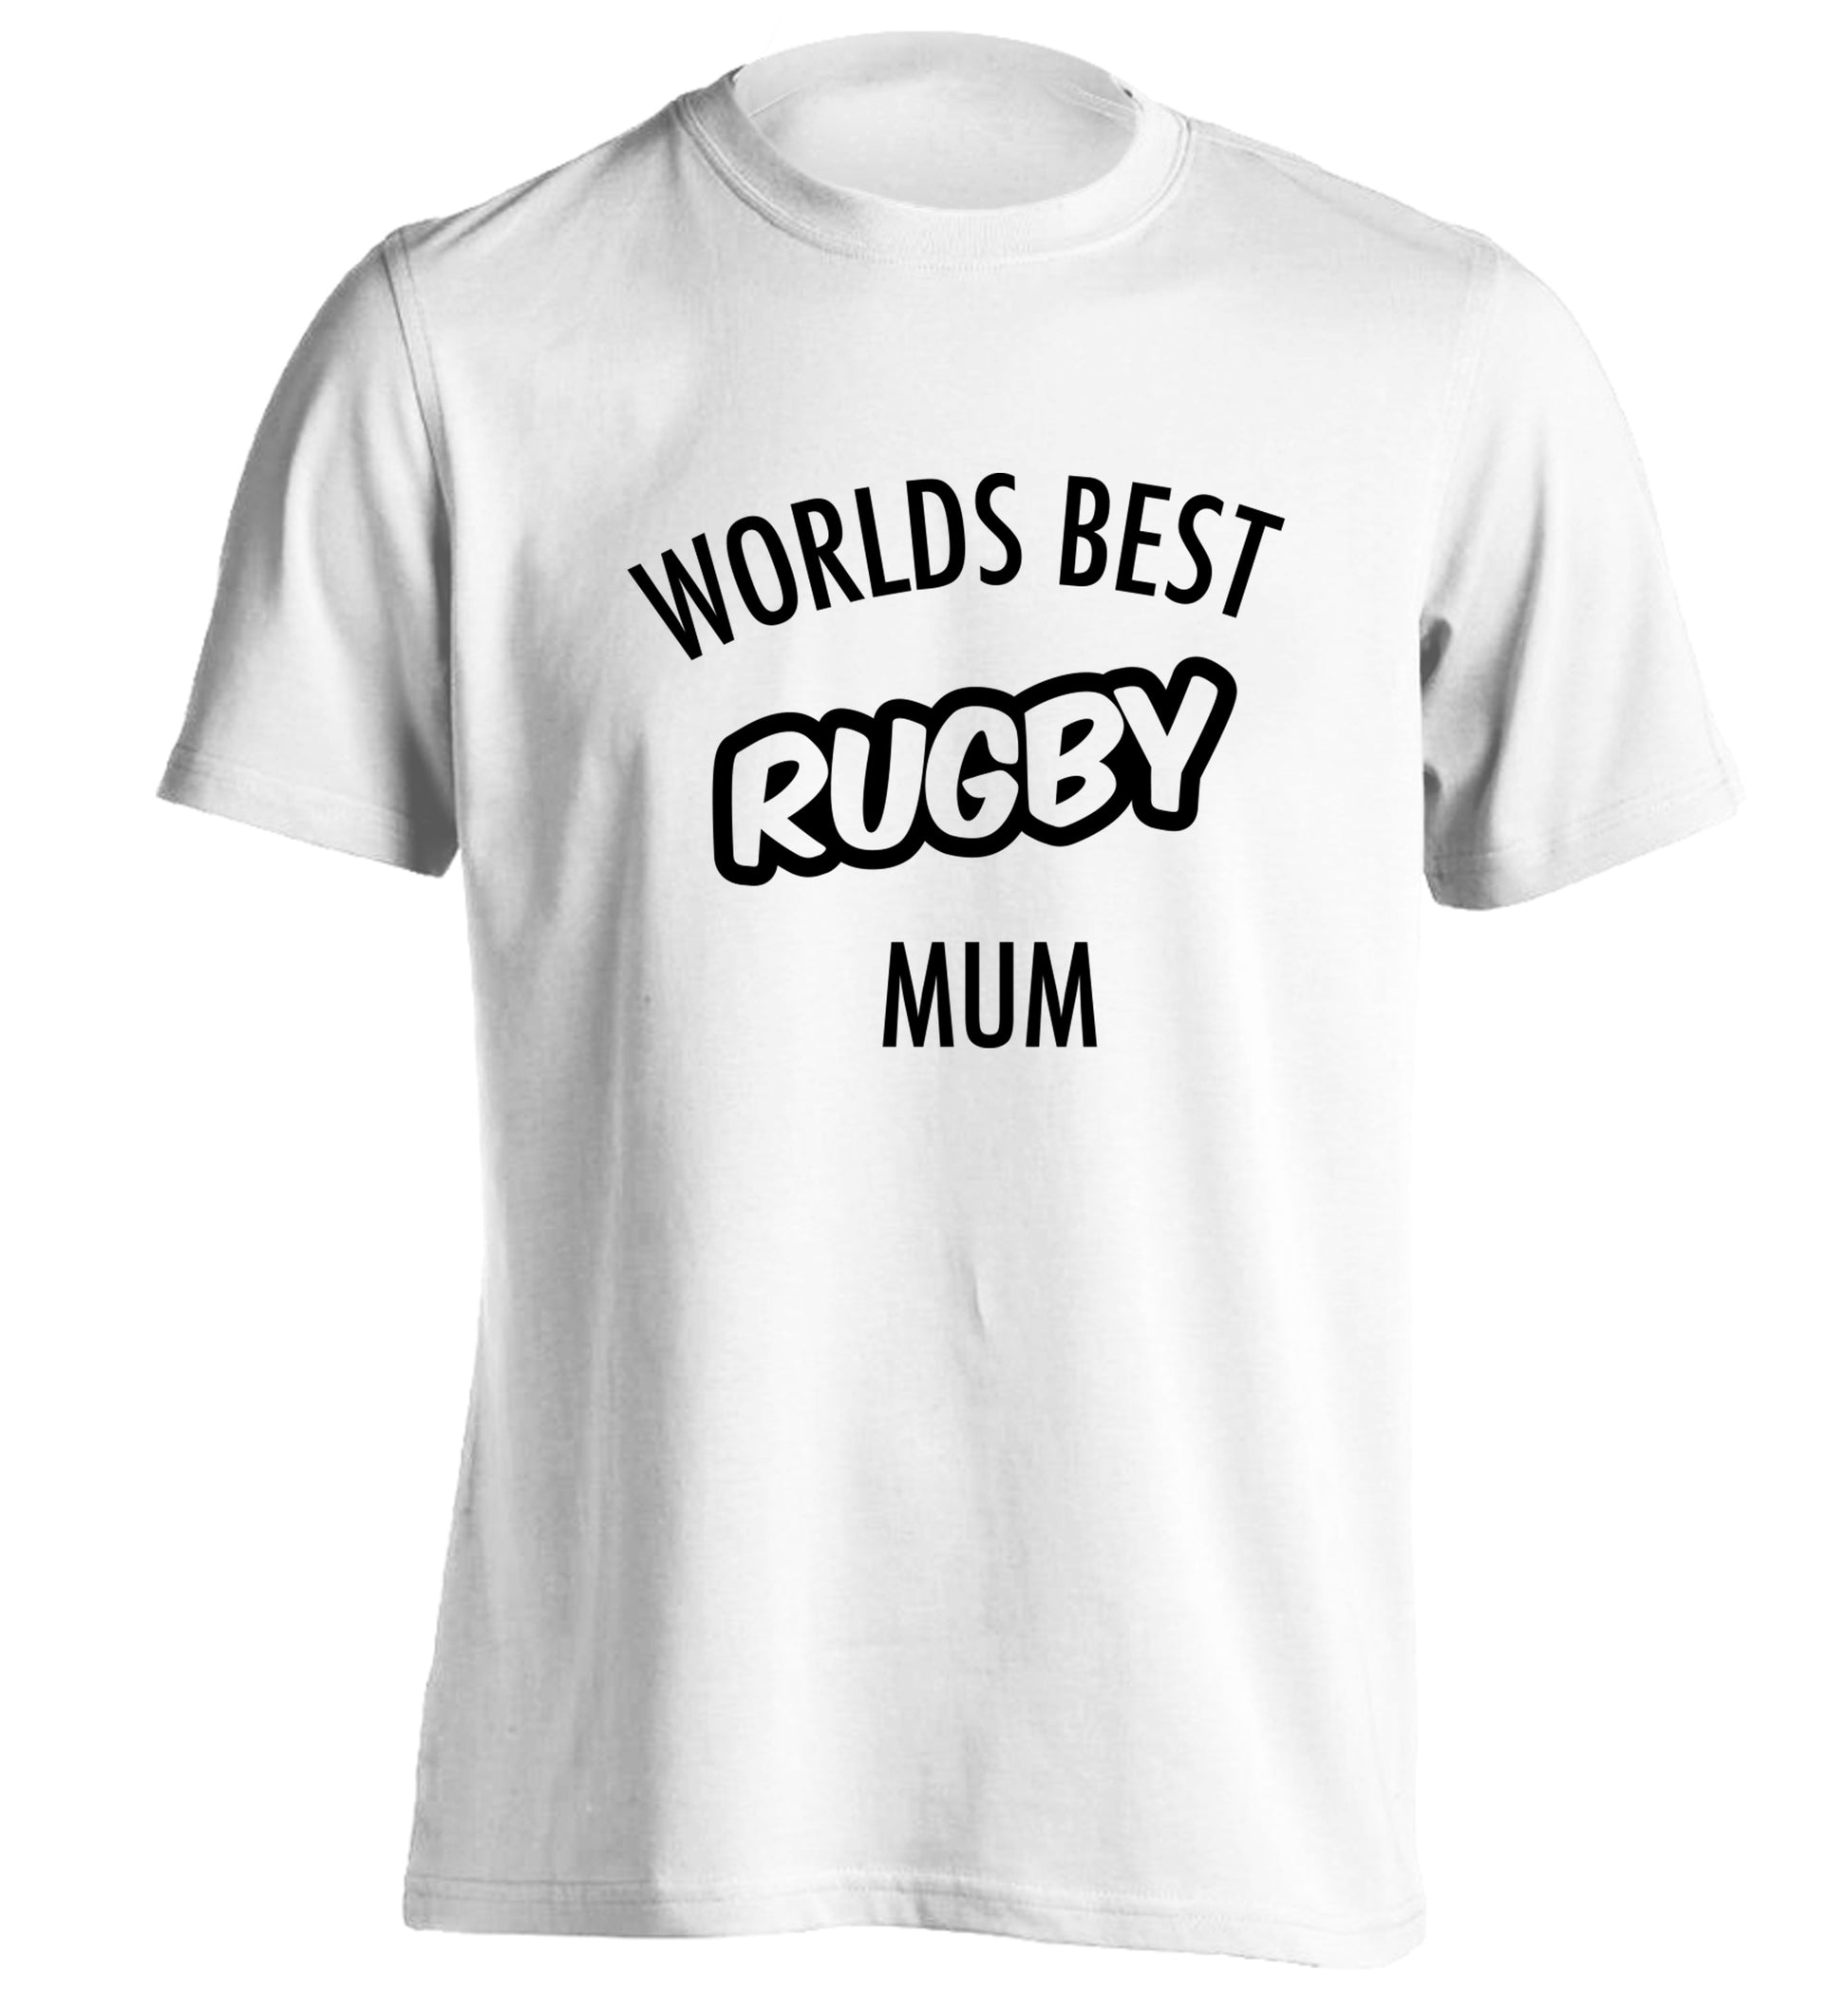 Worlds best rugby mum adults unisex white Tshirt 2XL